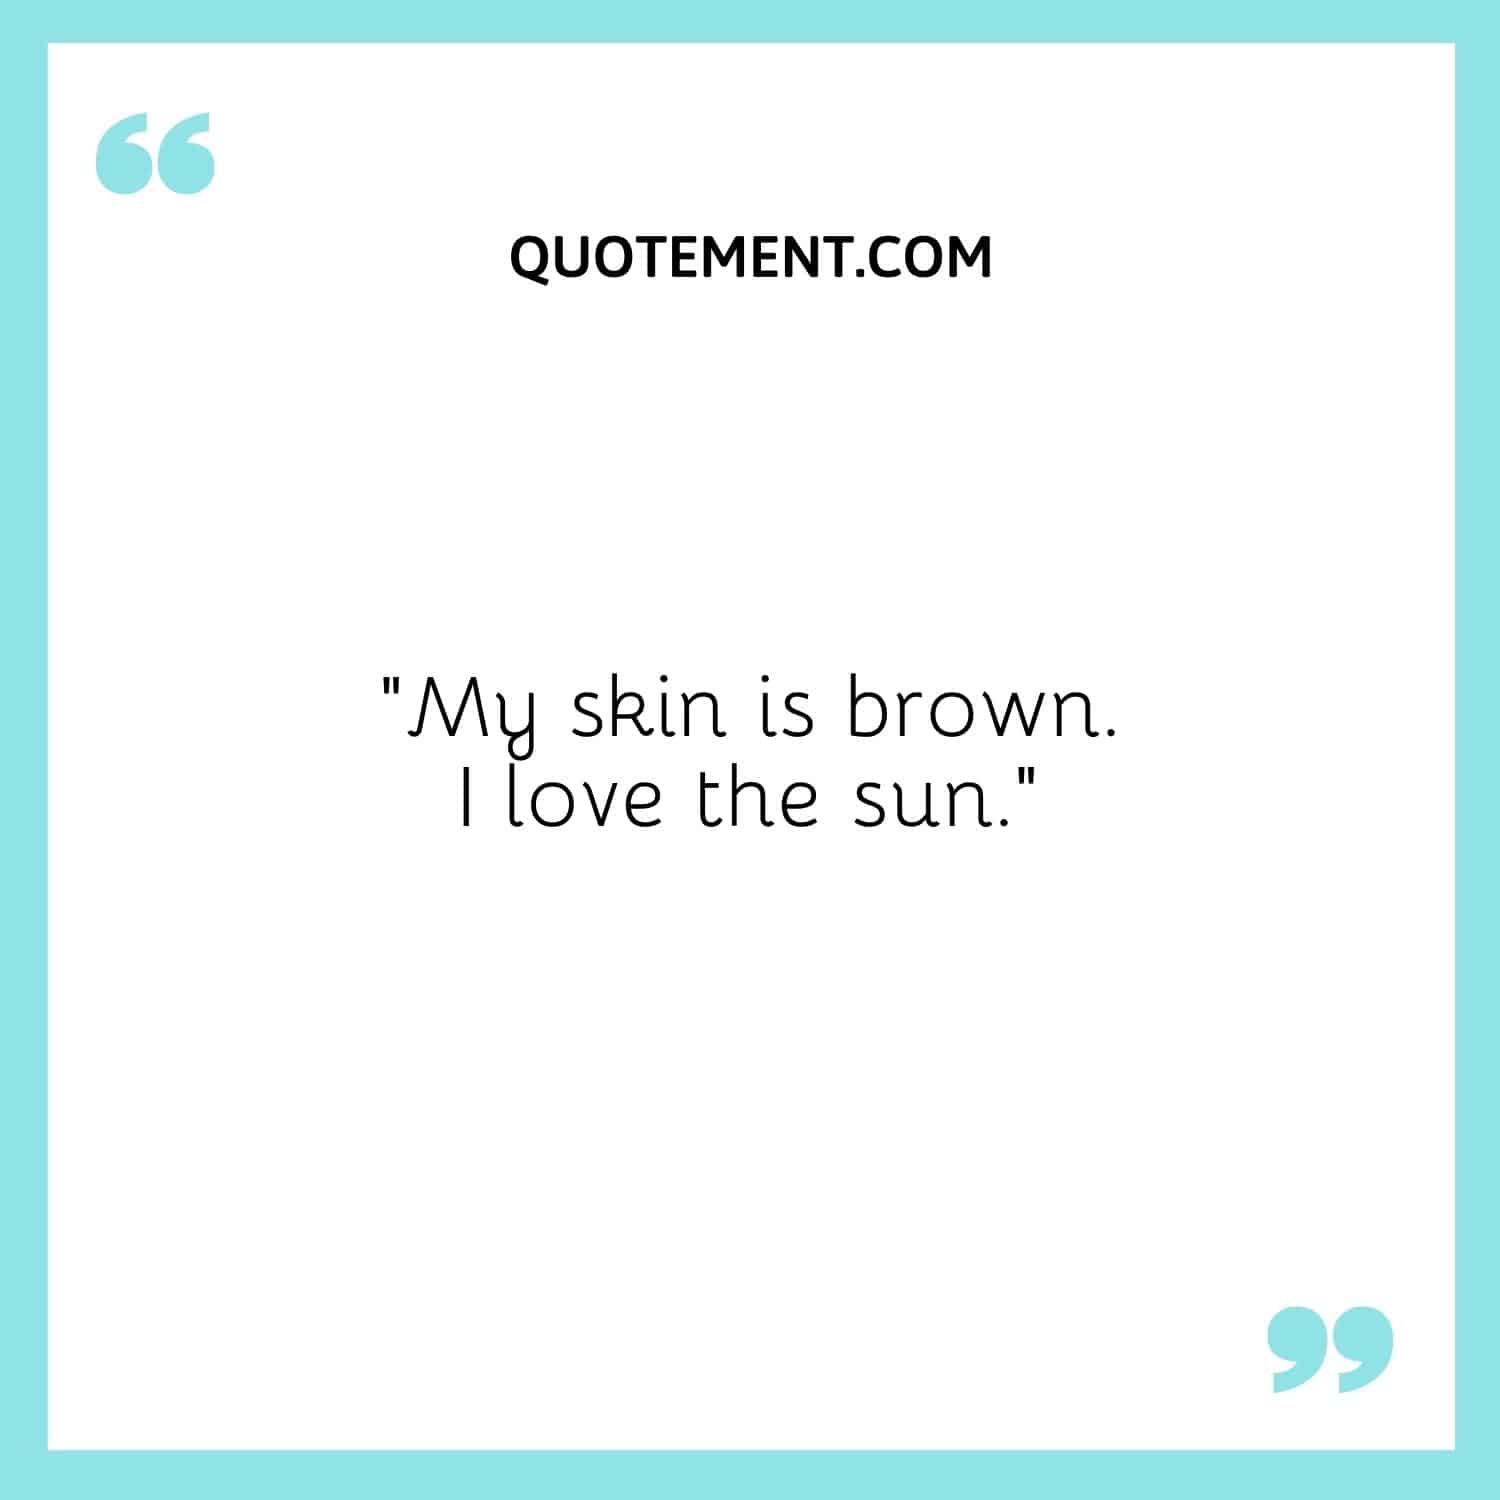 My skin is brown